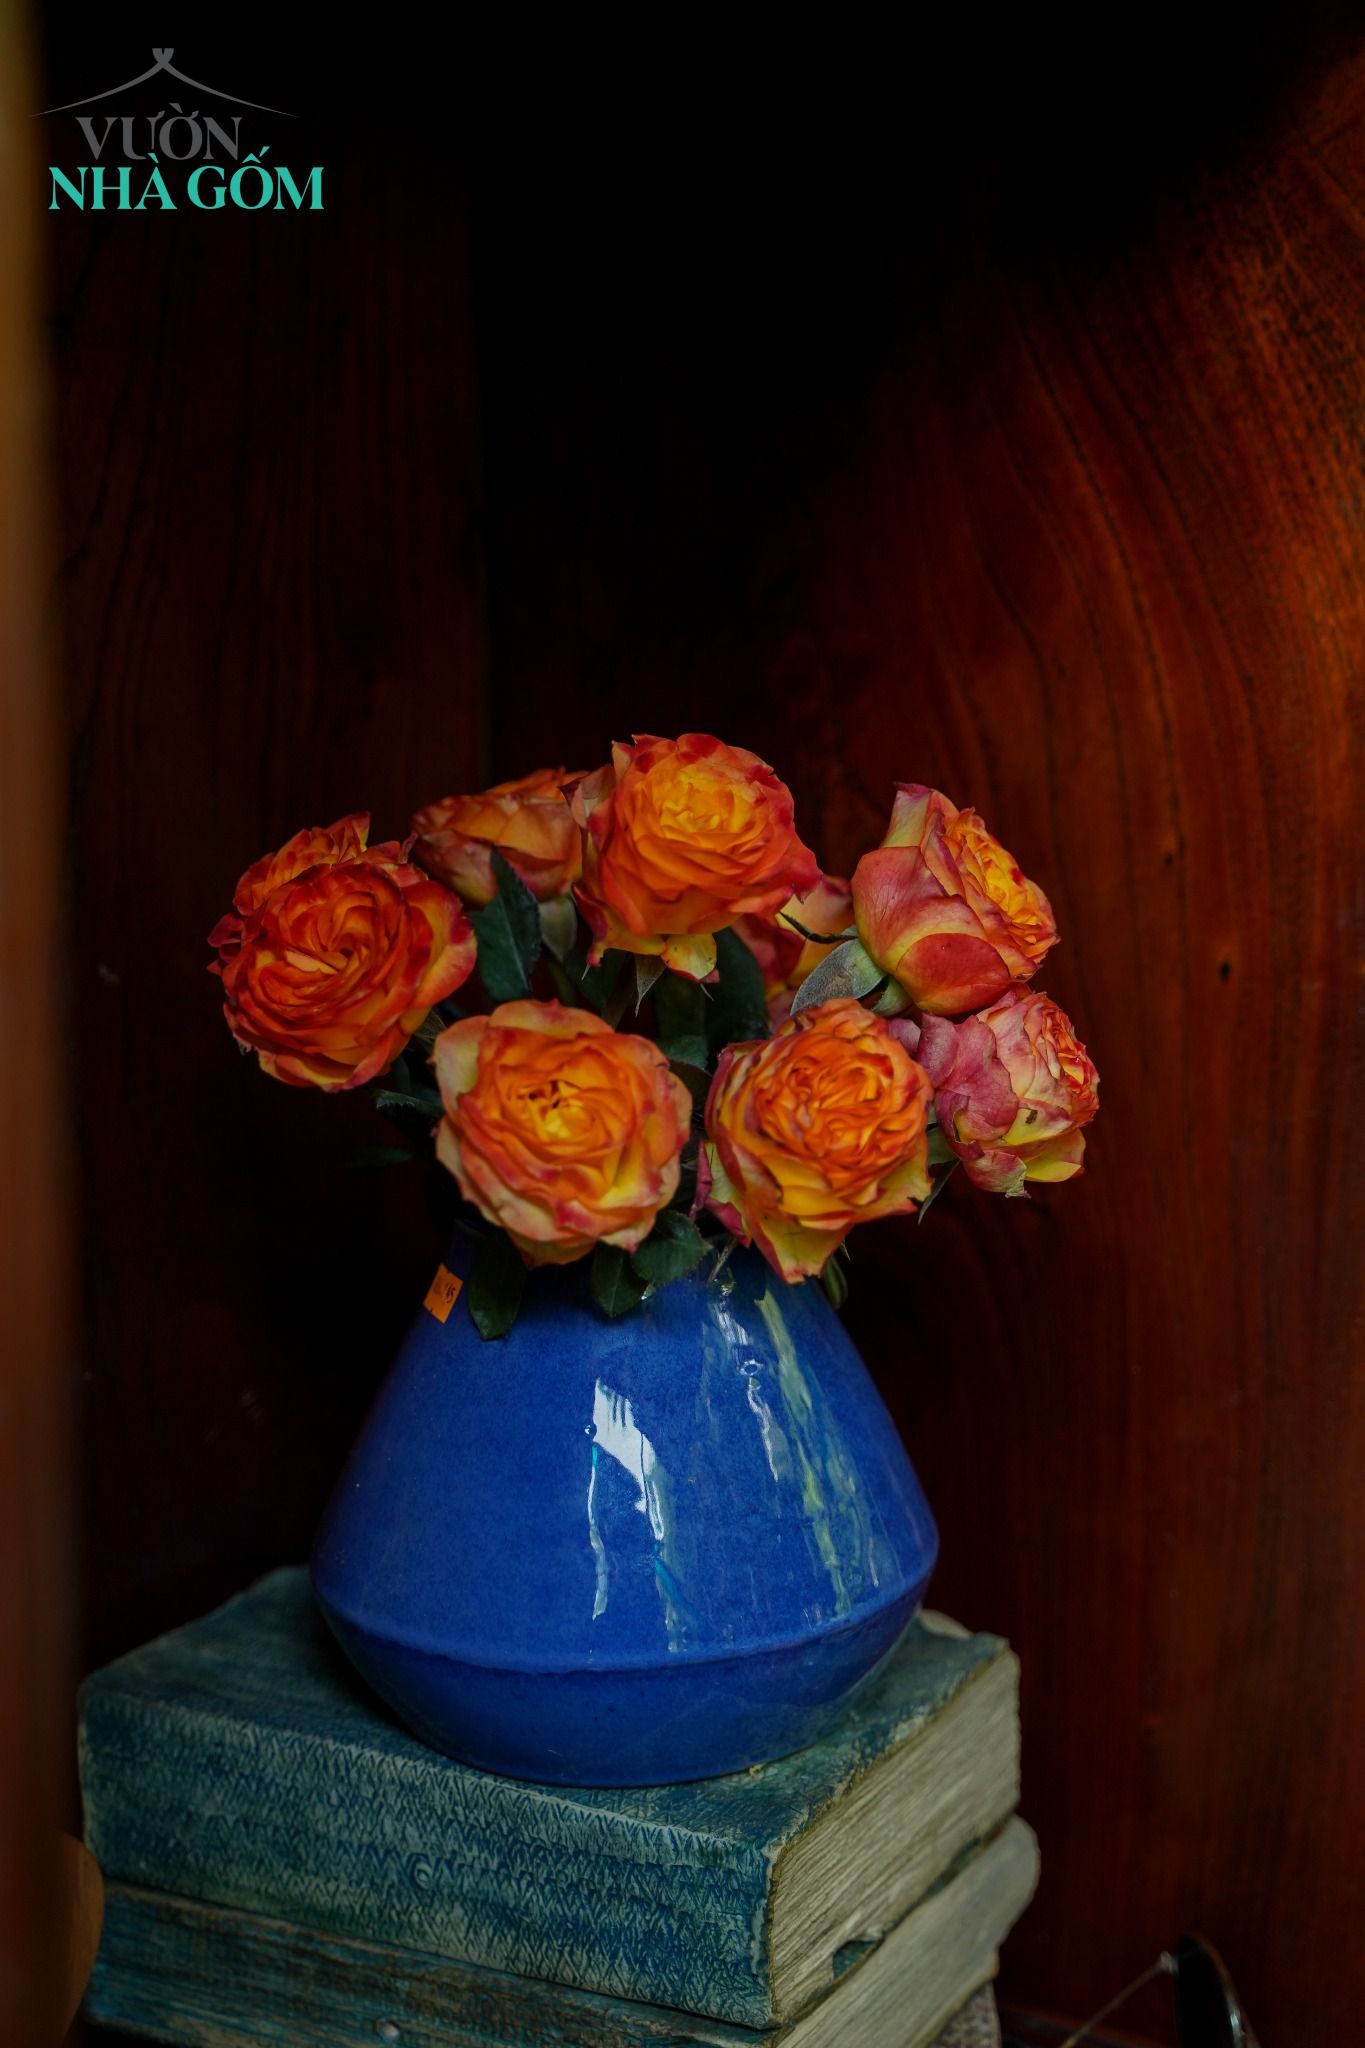  Bình giọt nước thấp, bình cắm hoa trang trí, H14xR17xM9 cm 